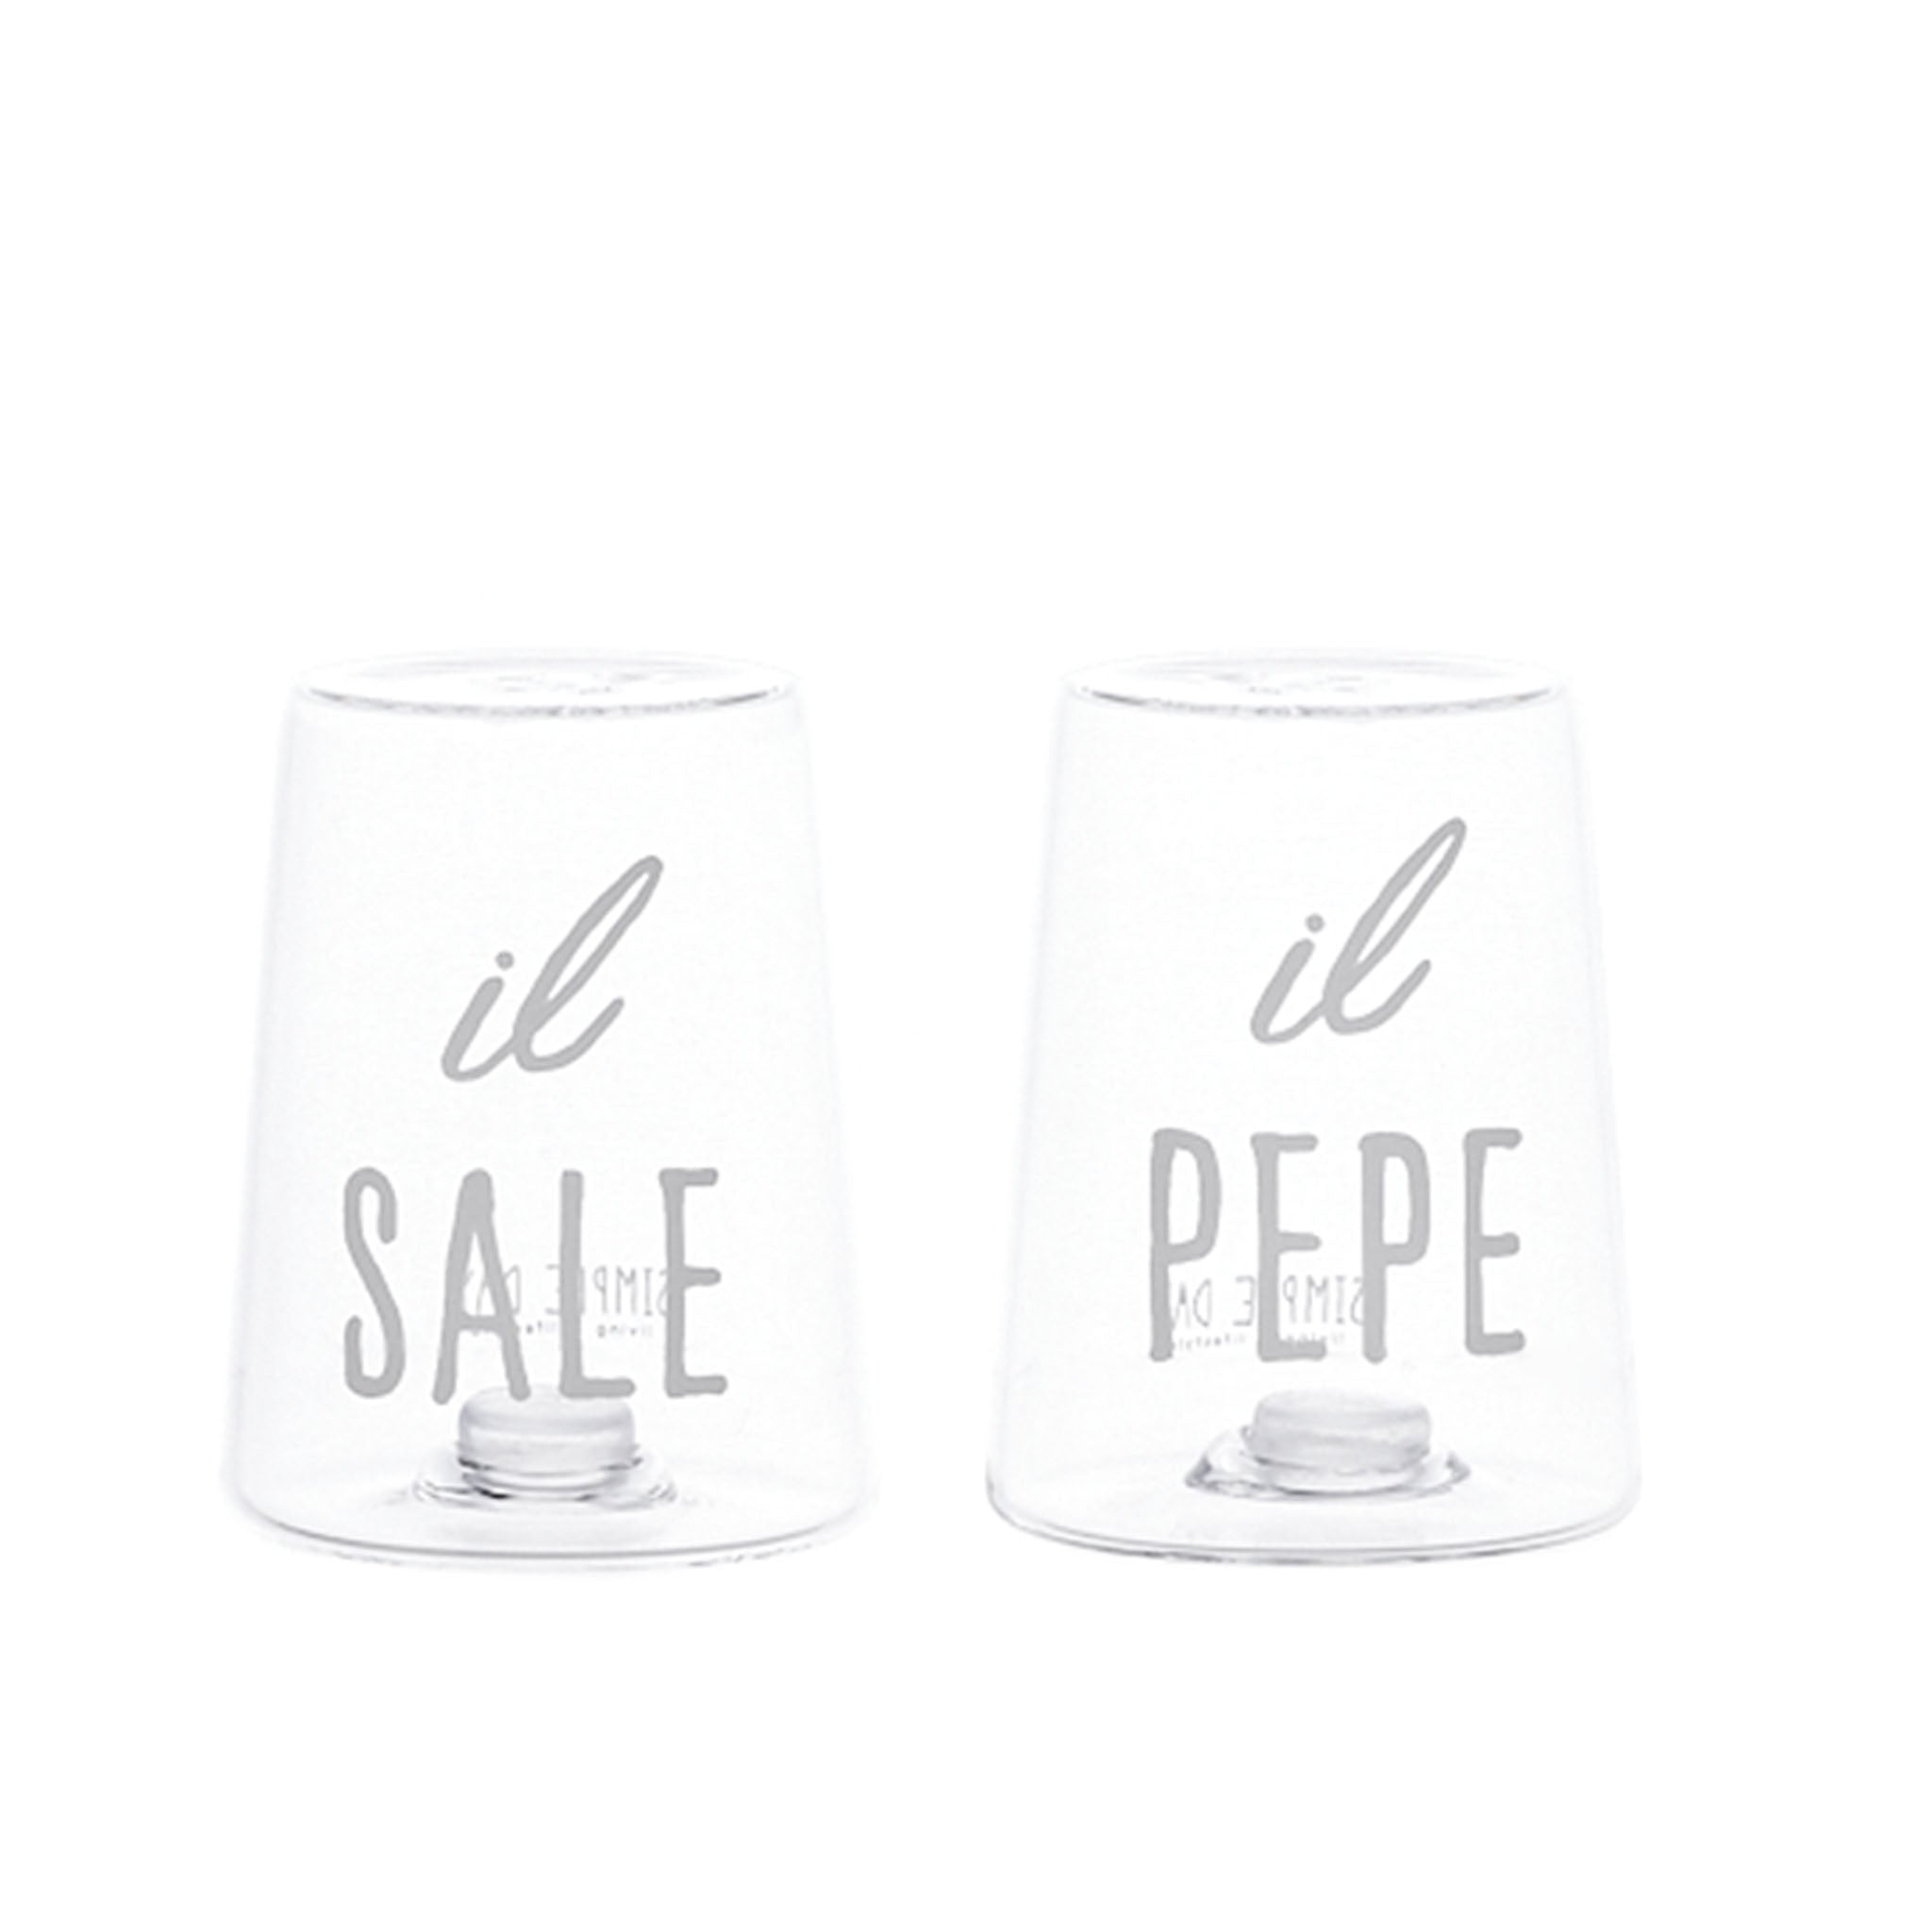 Sale e pepe "Il Sale" e "Il Pepe"